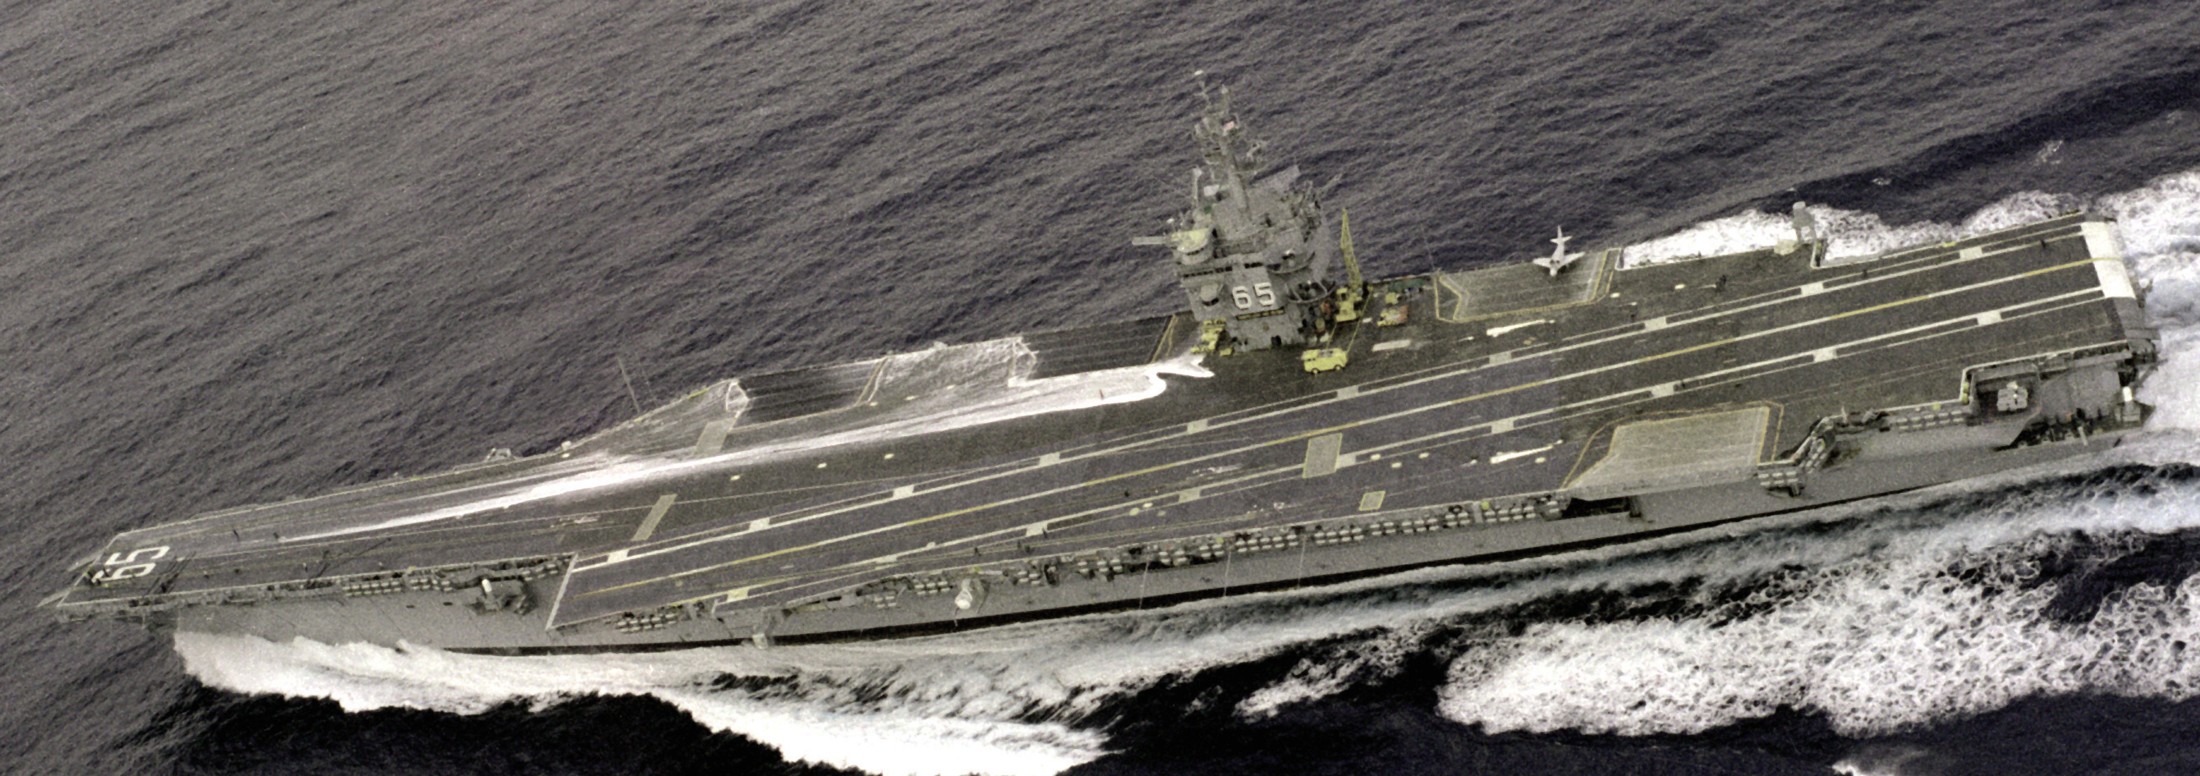 cvn-65 uss enterprise aircraft carrier us navy 165